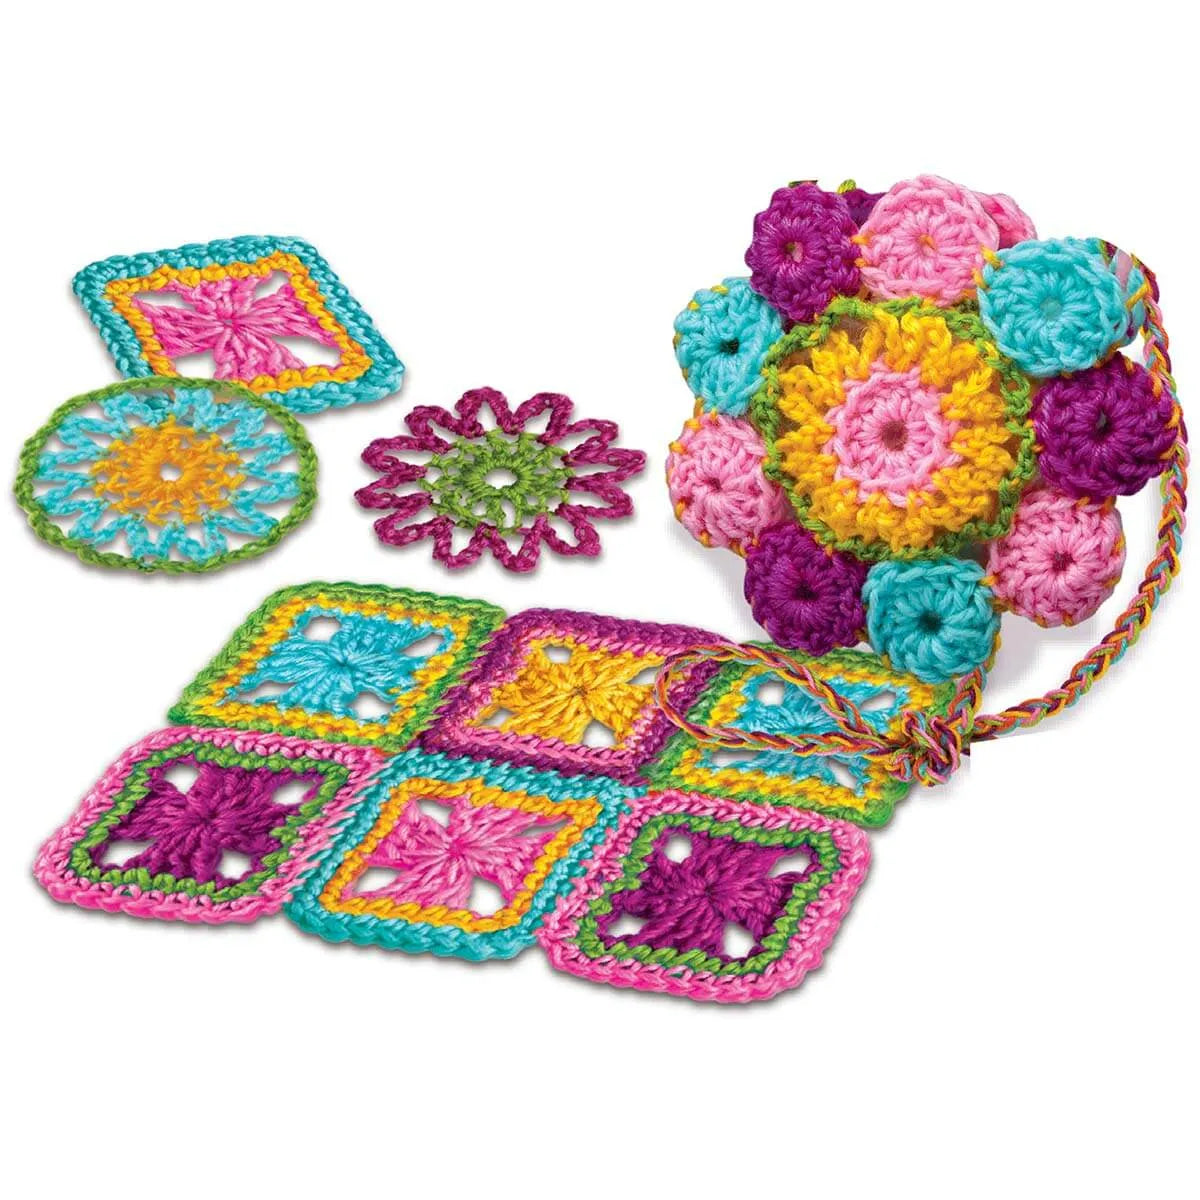 Crochet Kit for girls - crochet craft set for children - shop craft set for children at The Toy Room